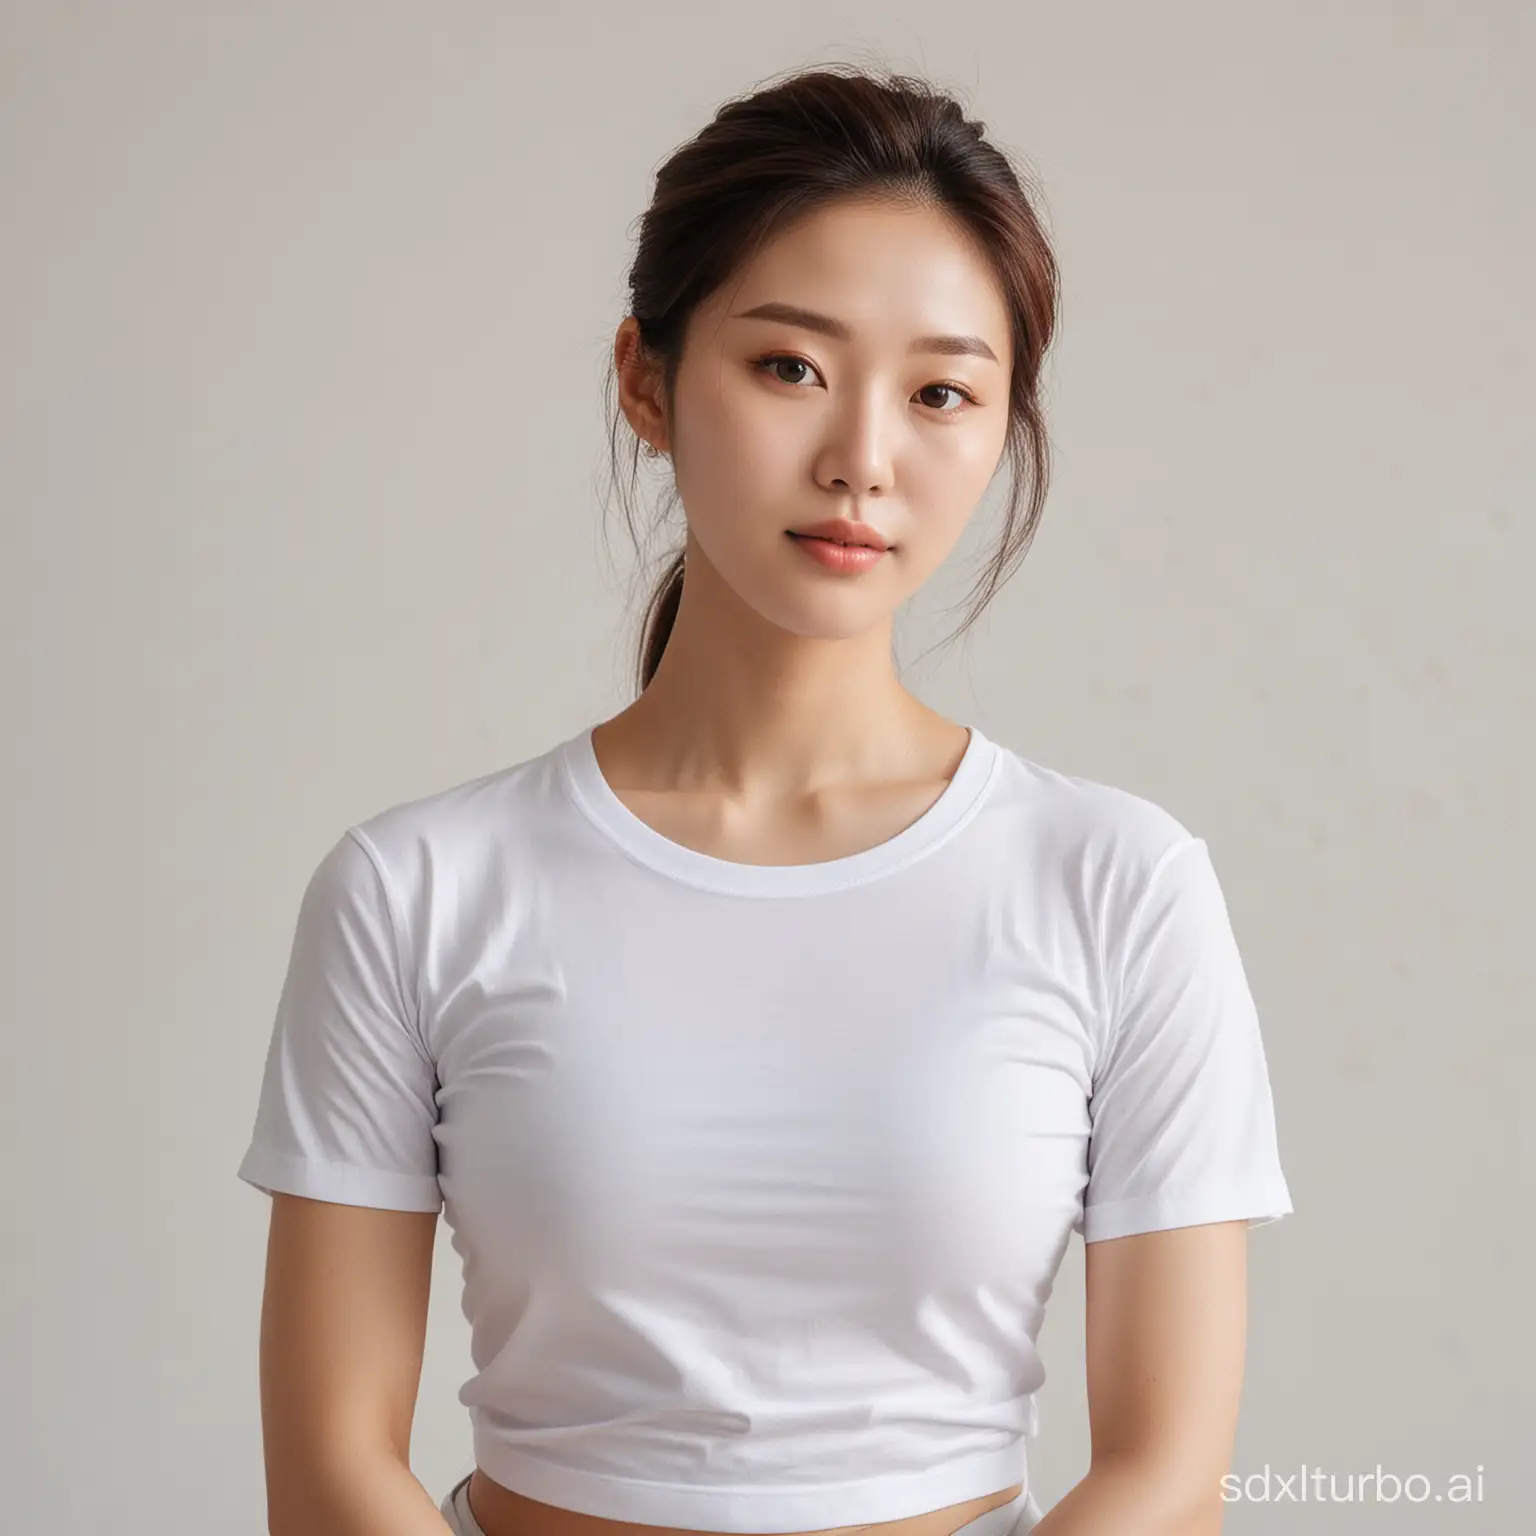 Korean-Yoga-Beauty-in-Elegant-White-TShirt-Poses-Gracefully